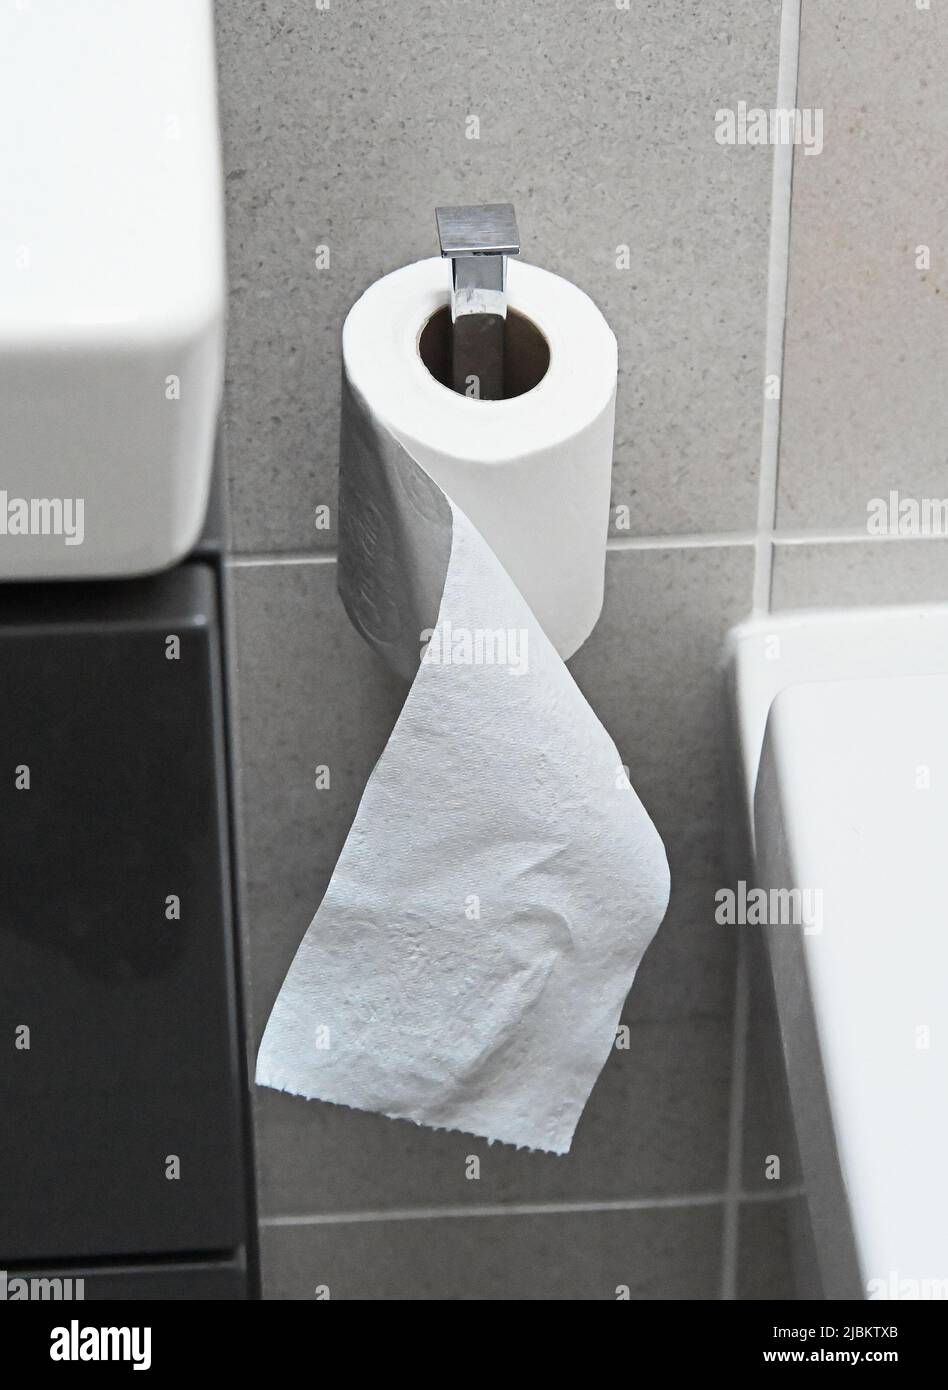 Rollo de papel higiénico en el soporte del baño de azulejos. Foto de stock